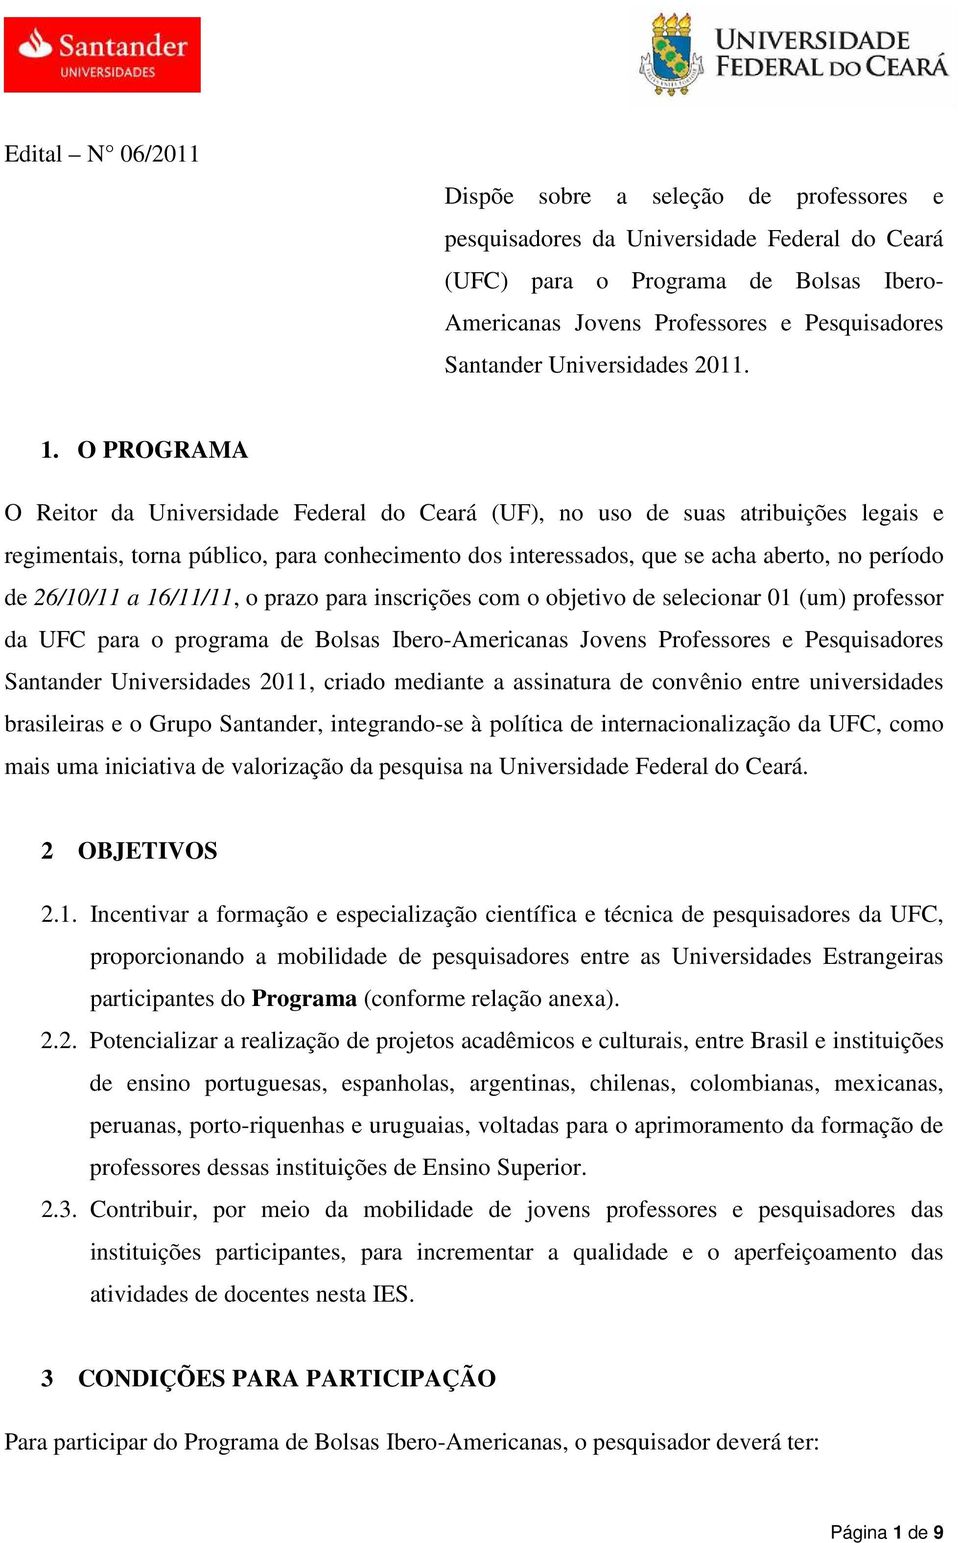 O PROGRAMA O Reitor da Universidade Federal do Ceará (UF), no uso de suas atribuições legais e regimentais, torna público, para conhecimento dos interessados, que se acha aberto, no período de